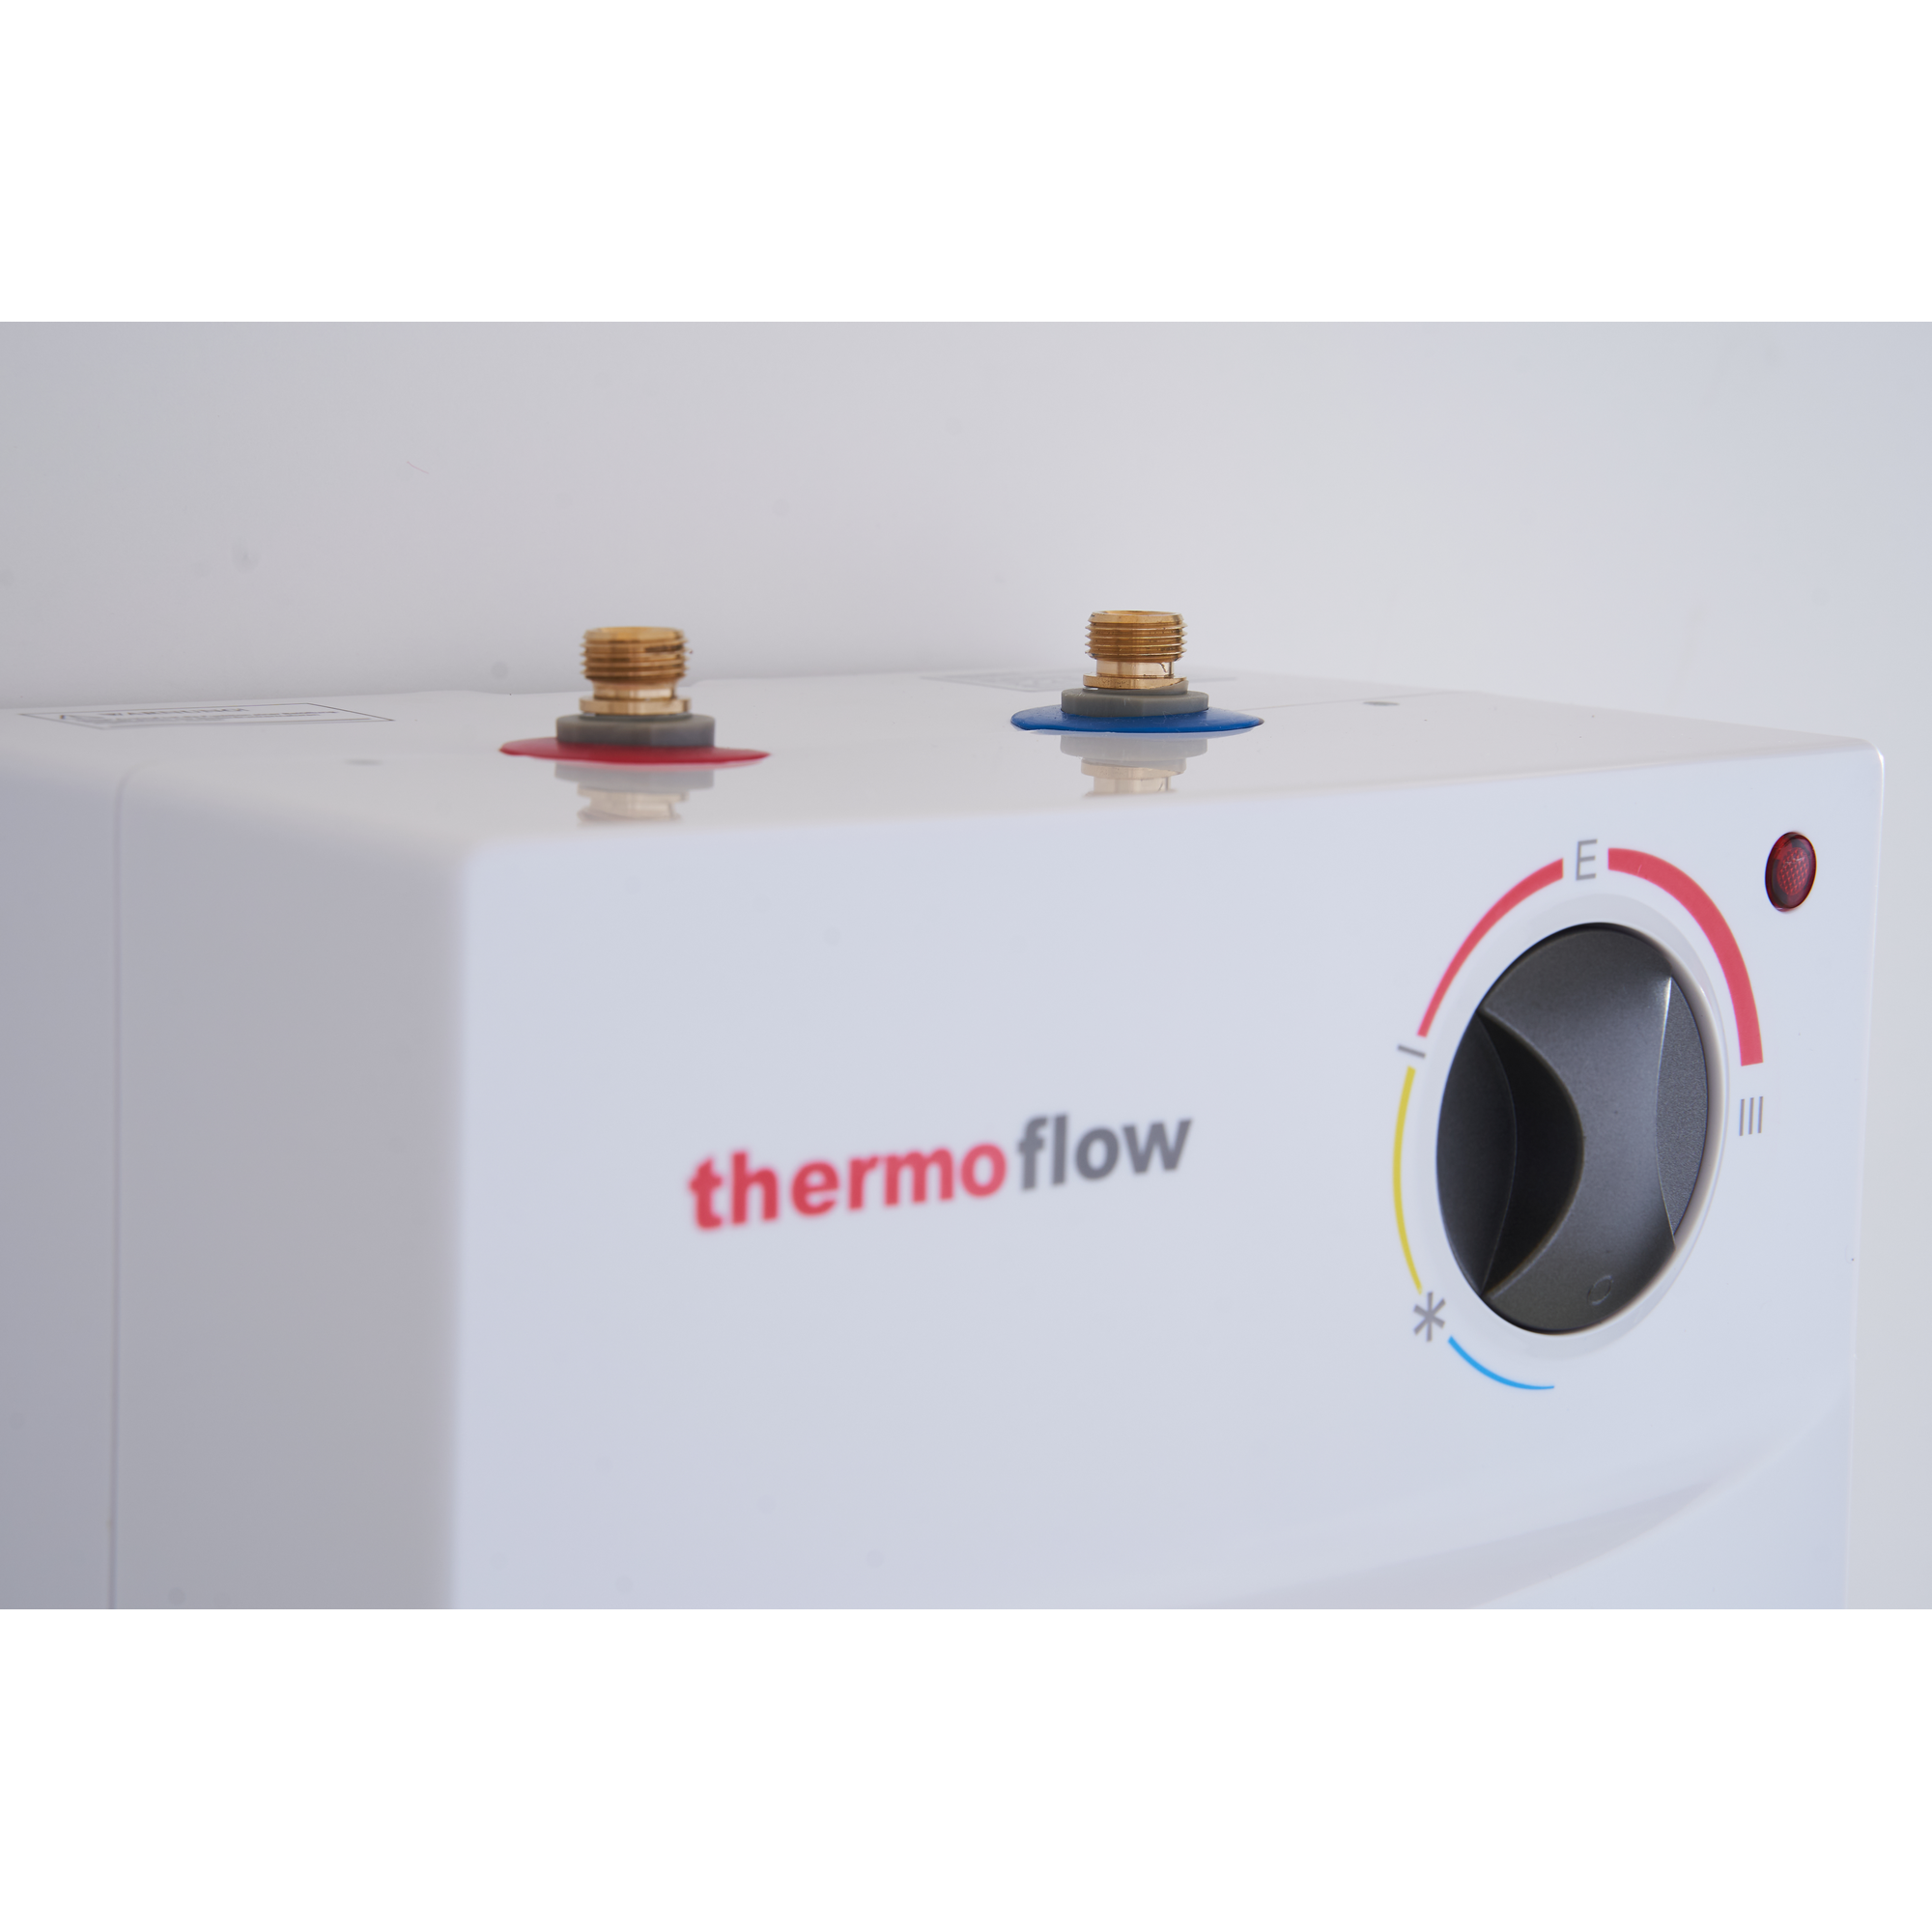 Untertischspeicher mit Armatur 'Thermoflow UT 5 N' 2 kW + product picture